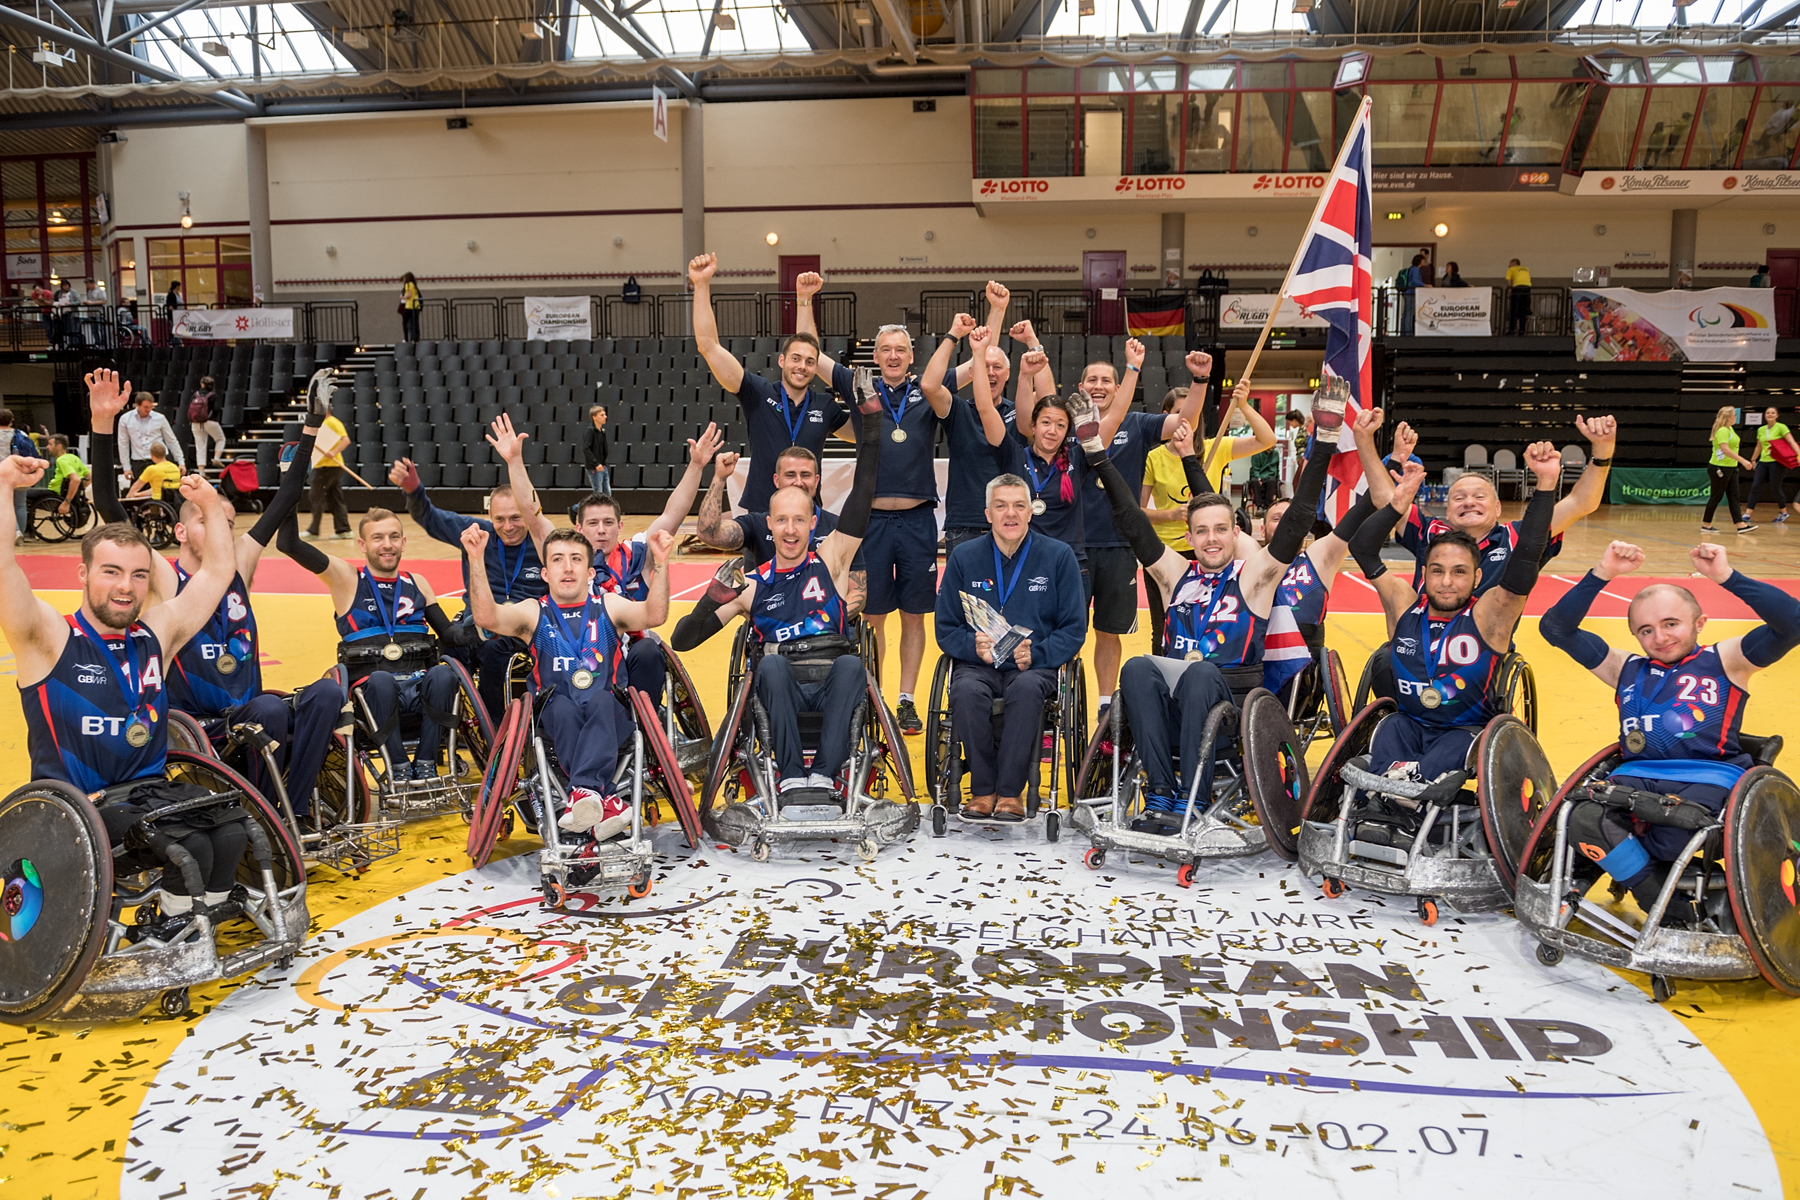 England gewinnt die Europameisterschaft im Rollstuhl Rugby